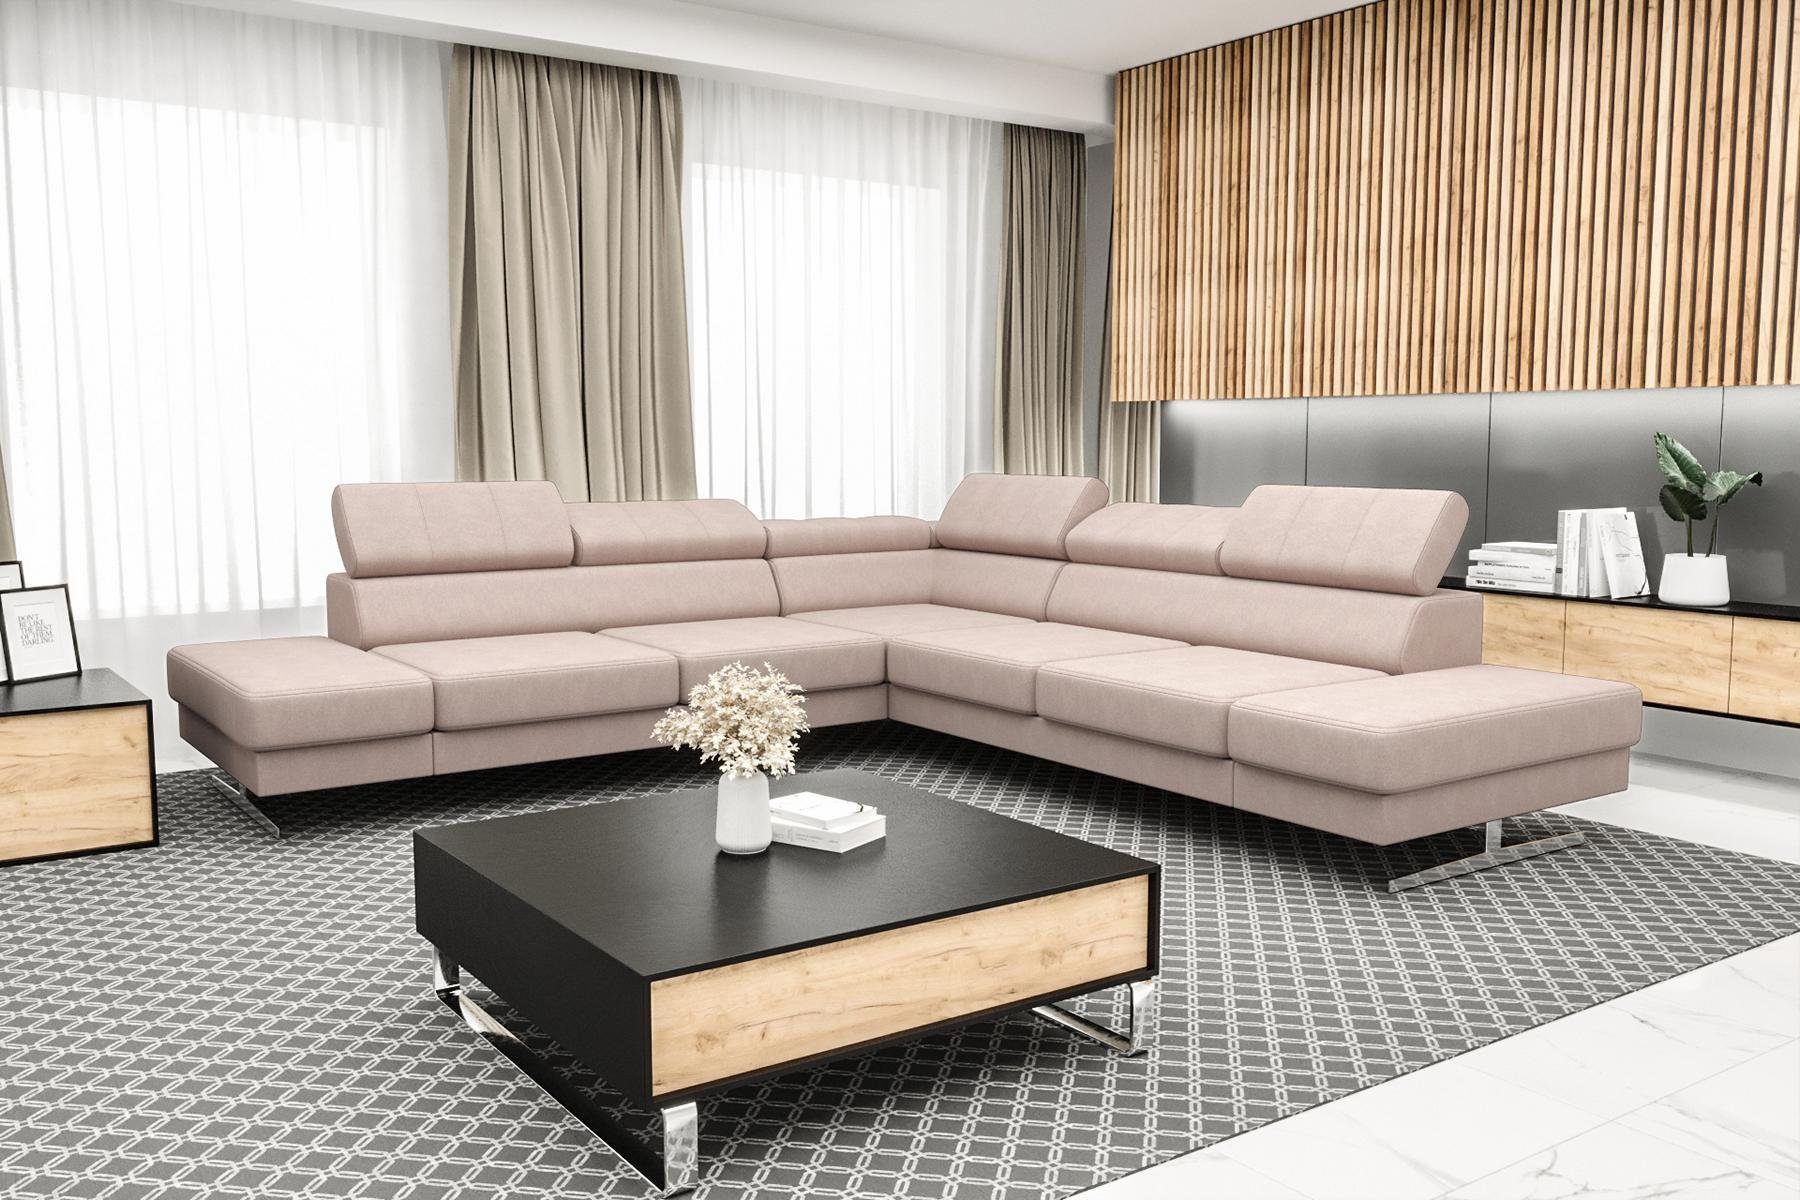 JVmoebel Ecksofa Designer Schwarzes L-Form Luxus Sofa Wohnzimmer Couch Textil, Made in Europe Rosa